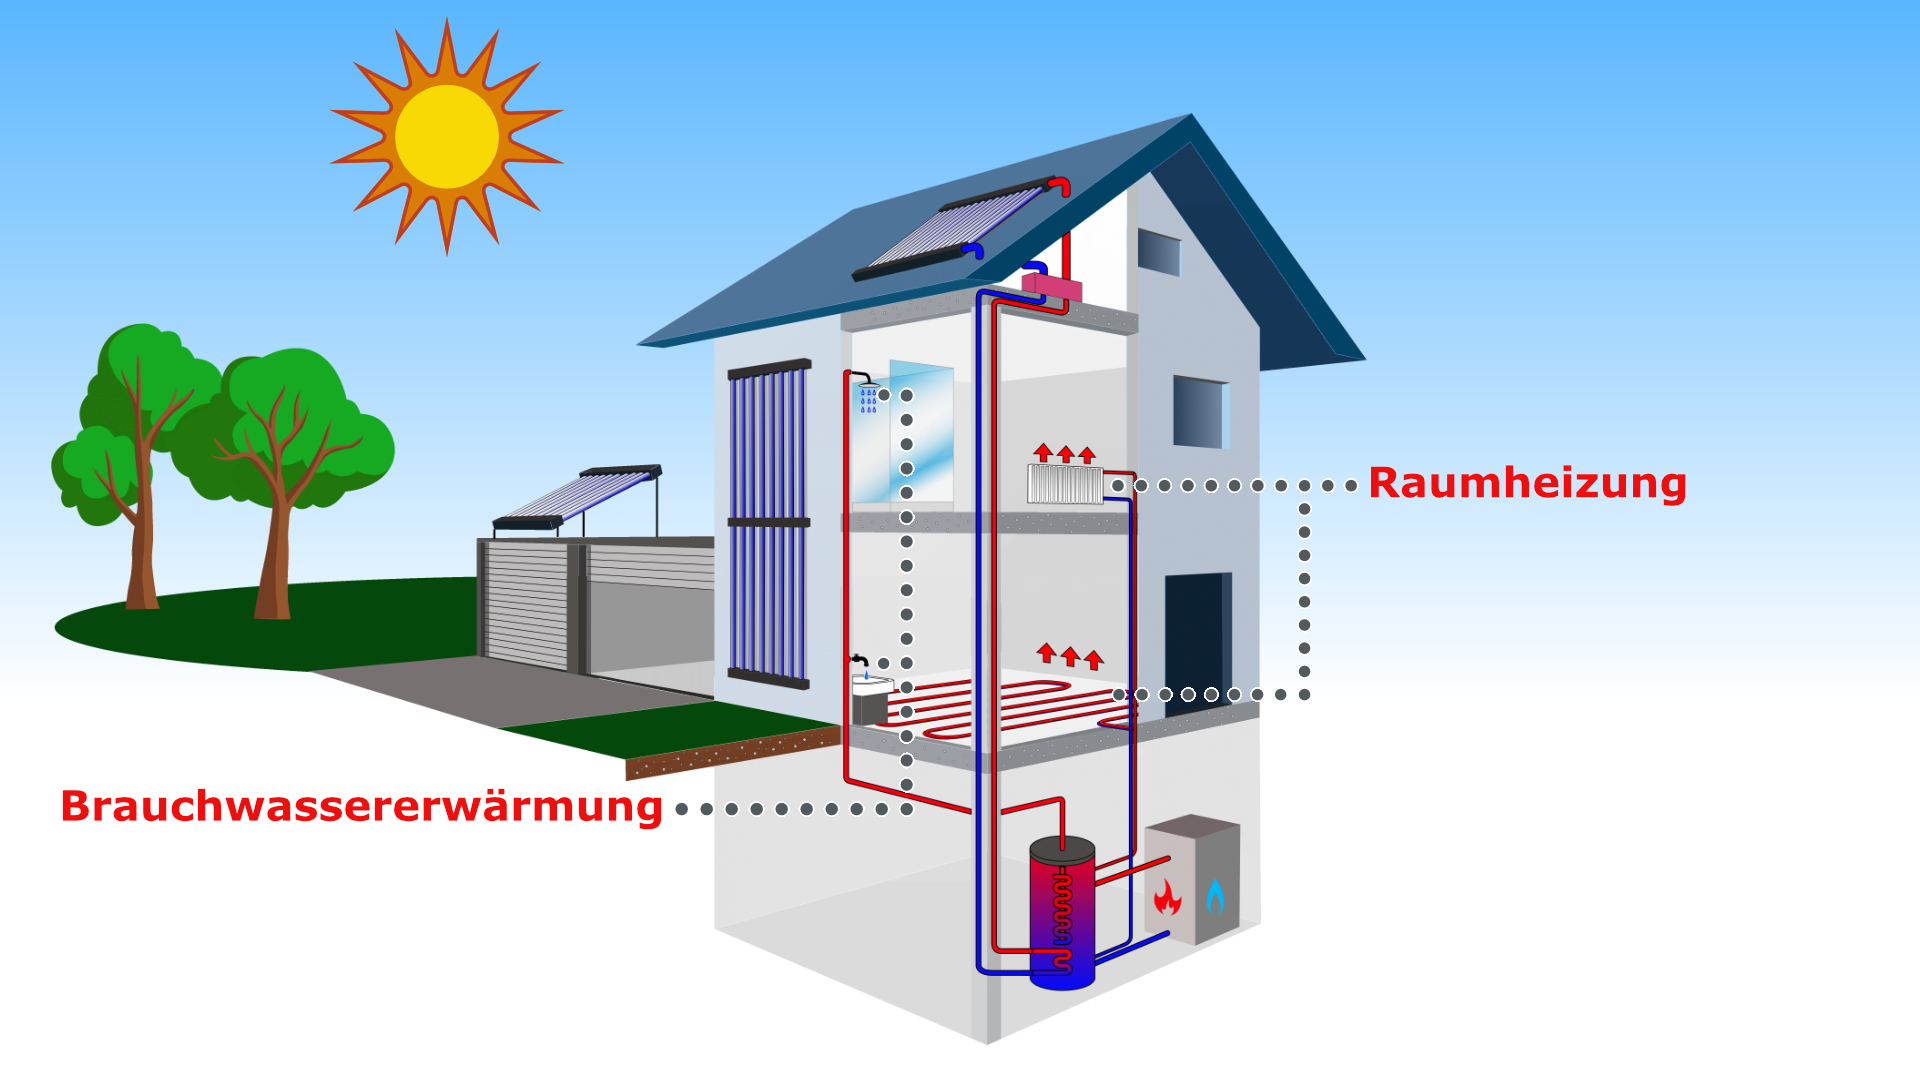 Das airwasol Solarthermie Solaranlagen System ermöglicht somit selbst im Winter bei geringer Einstrahlung und sehr kalter Umgebung hohe Temperaturen, welche vom Kollektor für Ihre Heizungsanlage und die innovativen Warmwasser-Speichersysteme bereitgestellt werden.